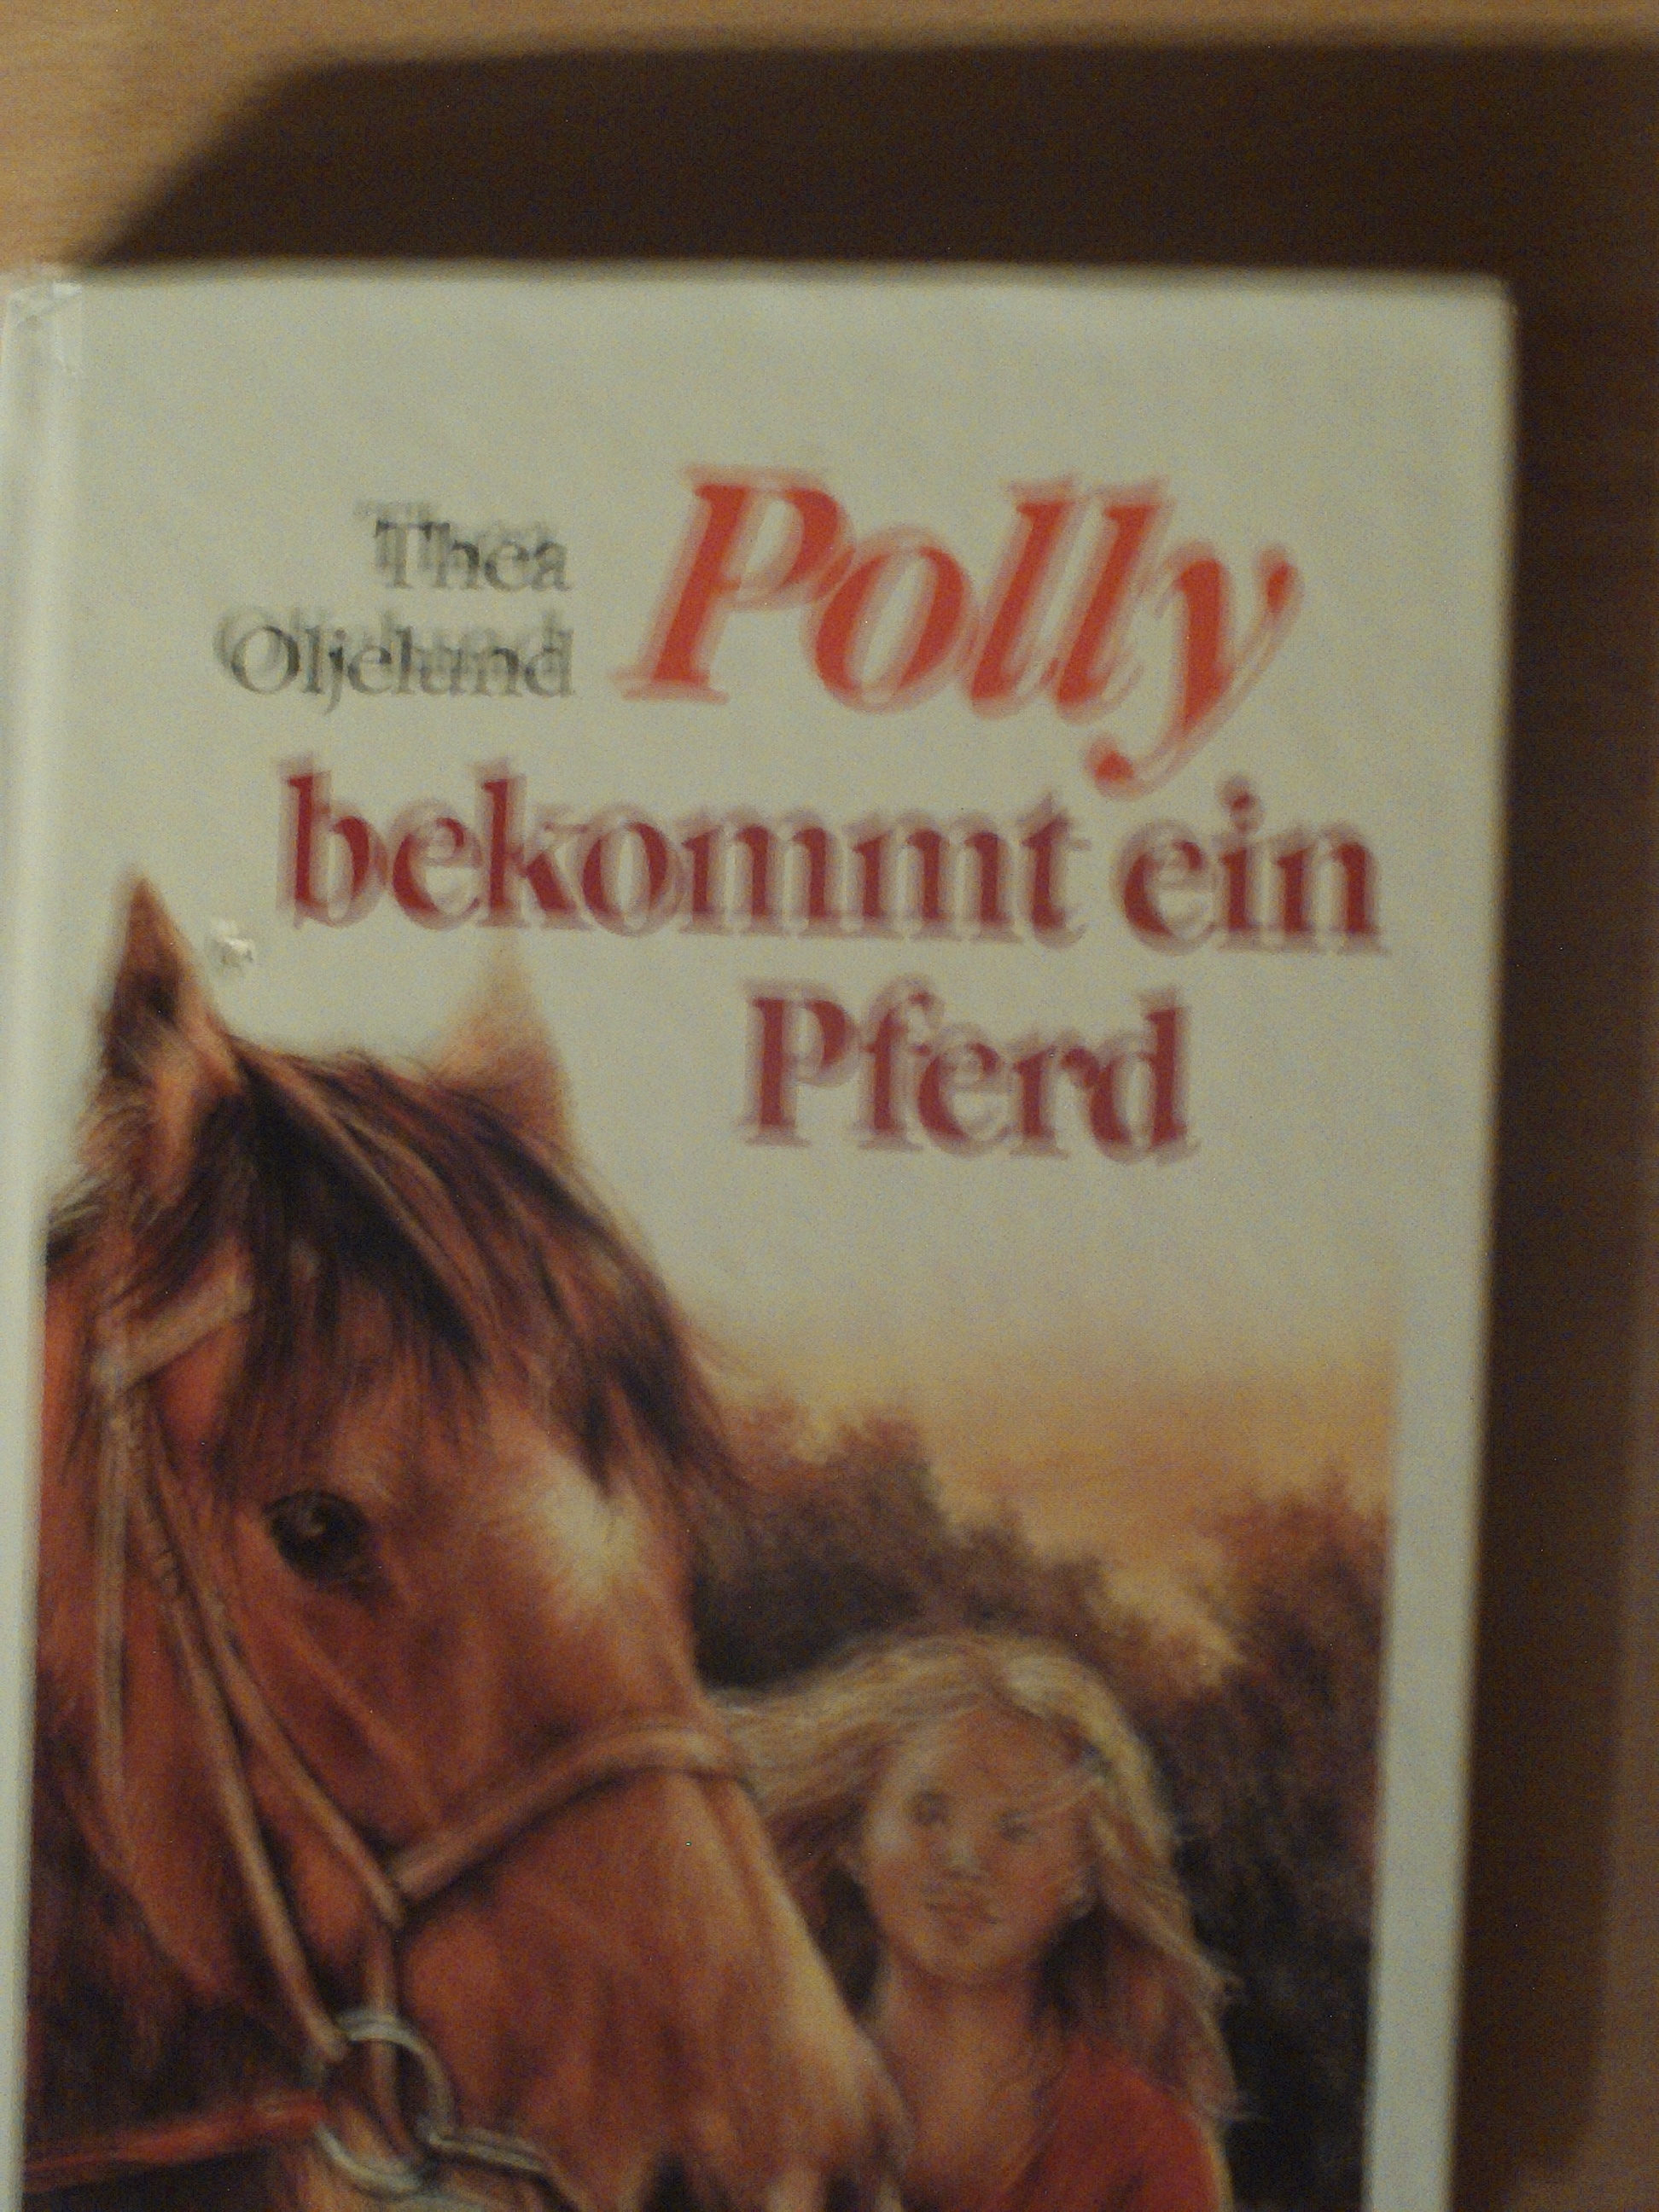 Polly bekommt ein Pferd Thea Oljelund